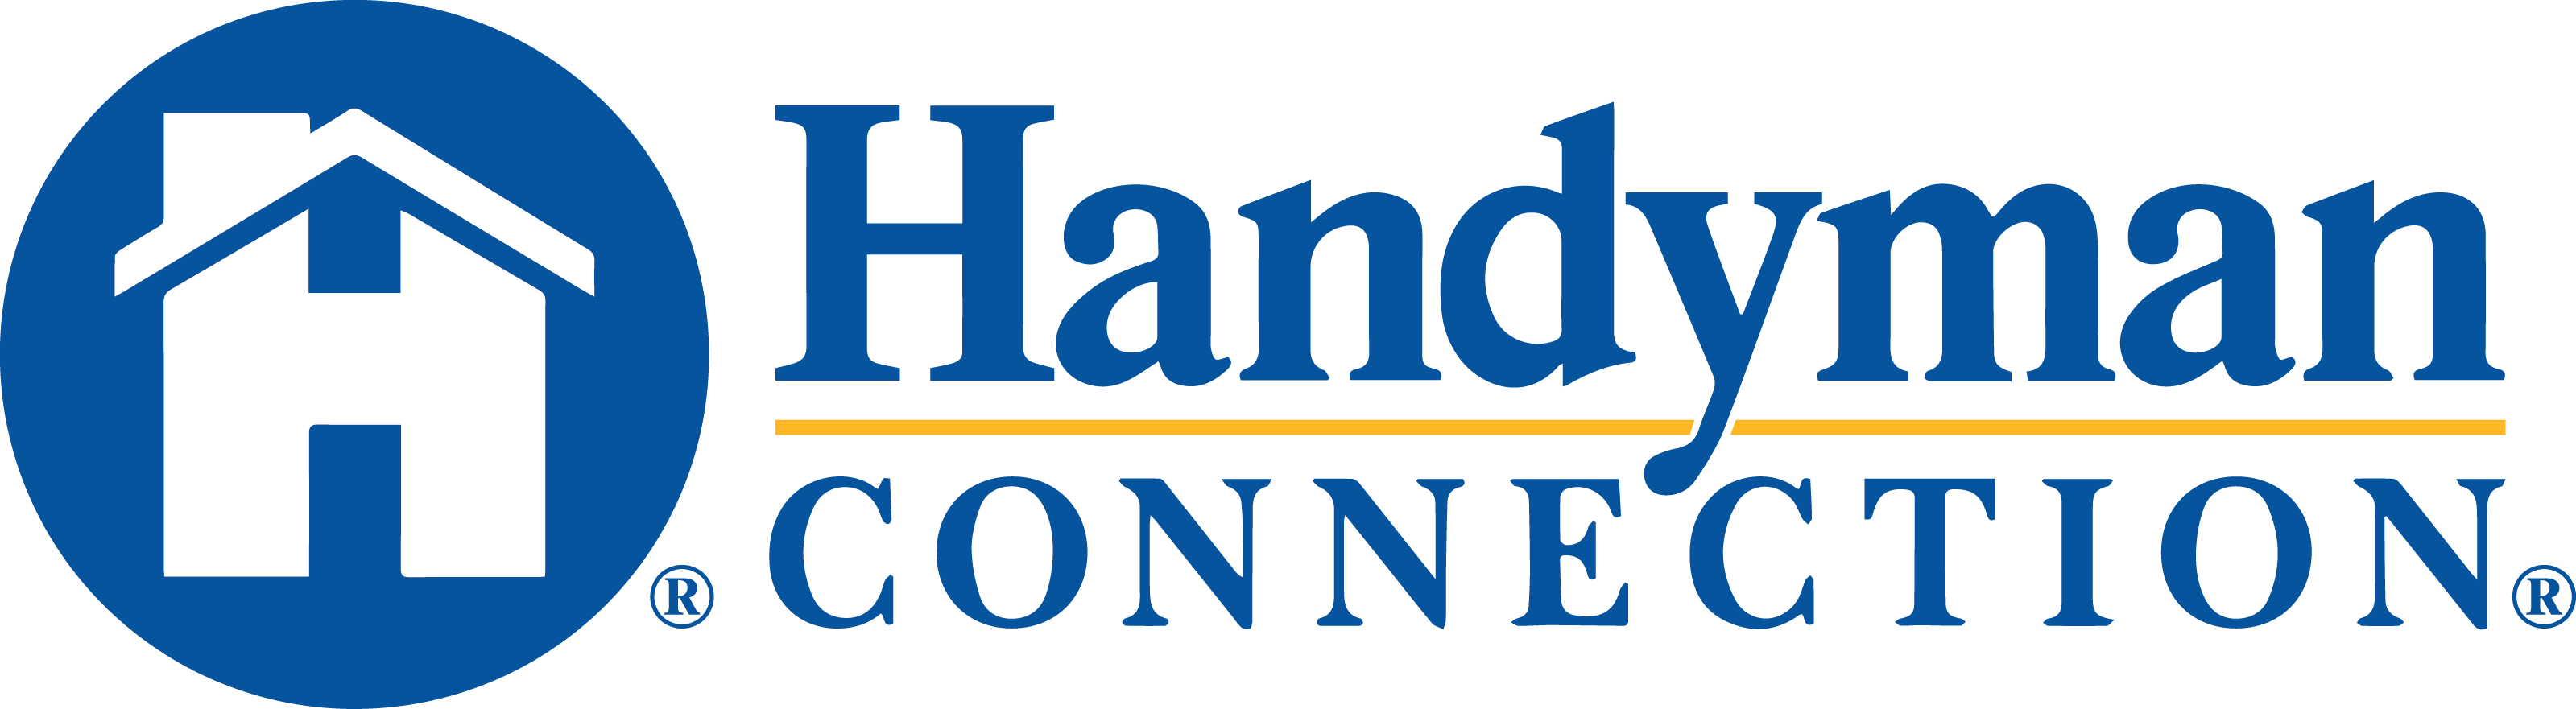 https://handymanconnection.com/ann-arbor/wp-content/uploads/sites/8/2021/05/HandymanConnection-logo-2-1.png